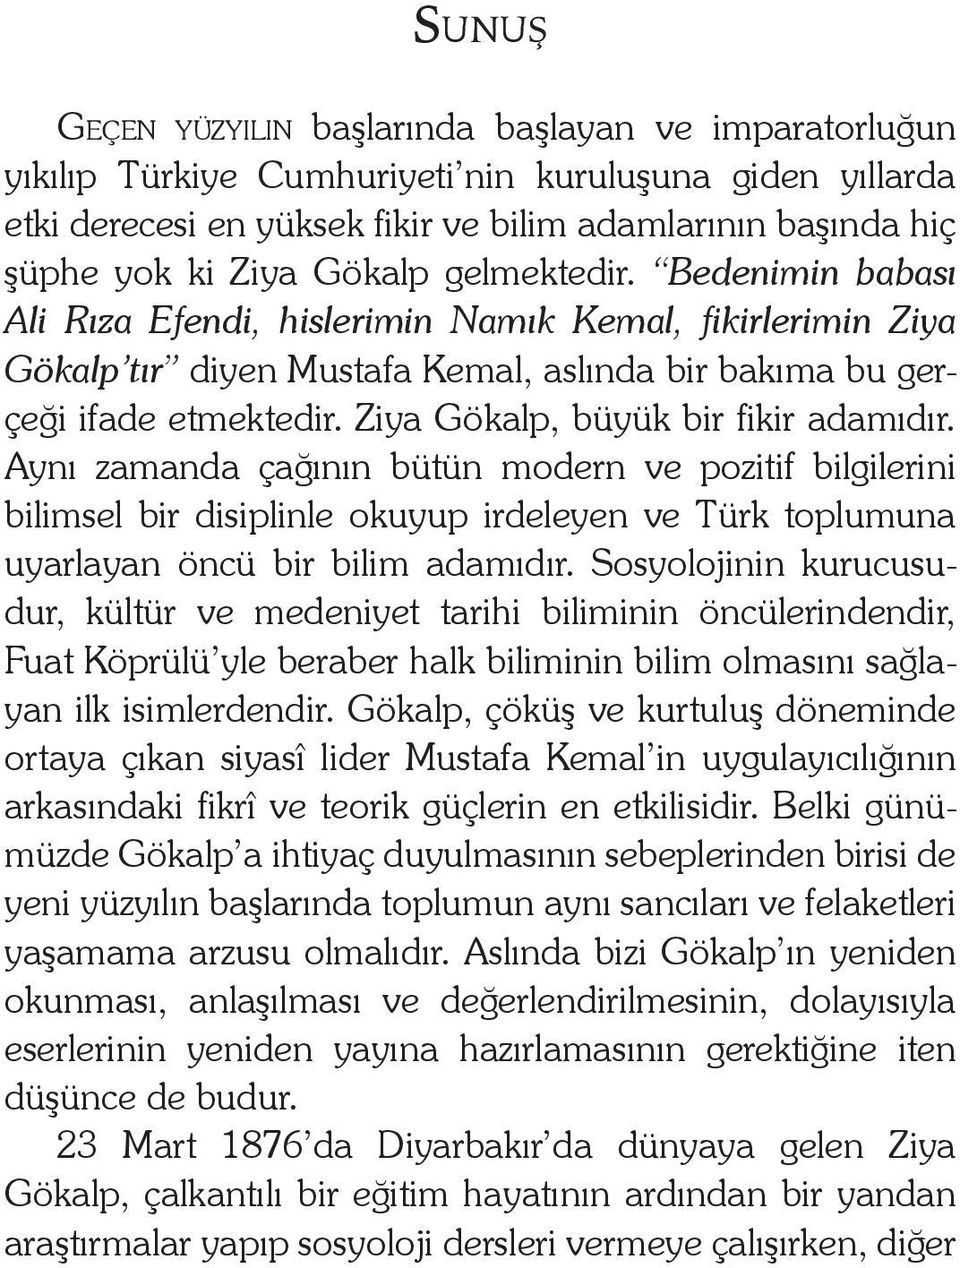 Ziya Gökalp, büyük bir fikir adamıdır. Aynı zamanda çağının bütün modern ve pozitif bilgilerini bilimsel bir disiplinle okuyup irdeleyen ve Türk toplumuna uyarlayan öncü bir bilim adamıdır.